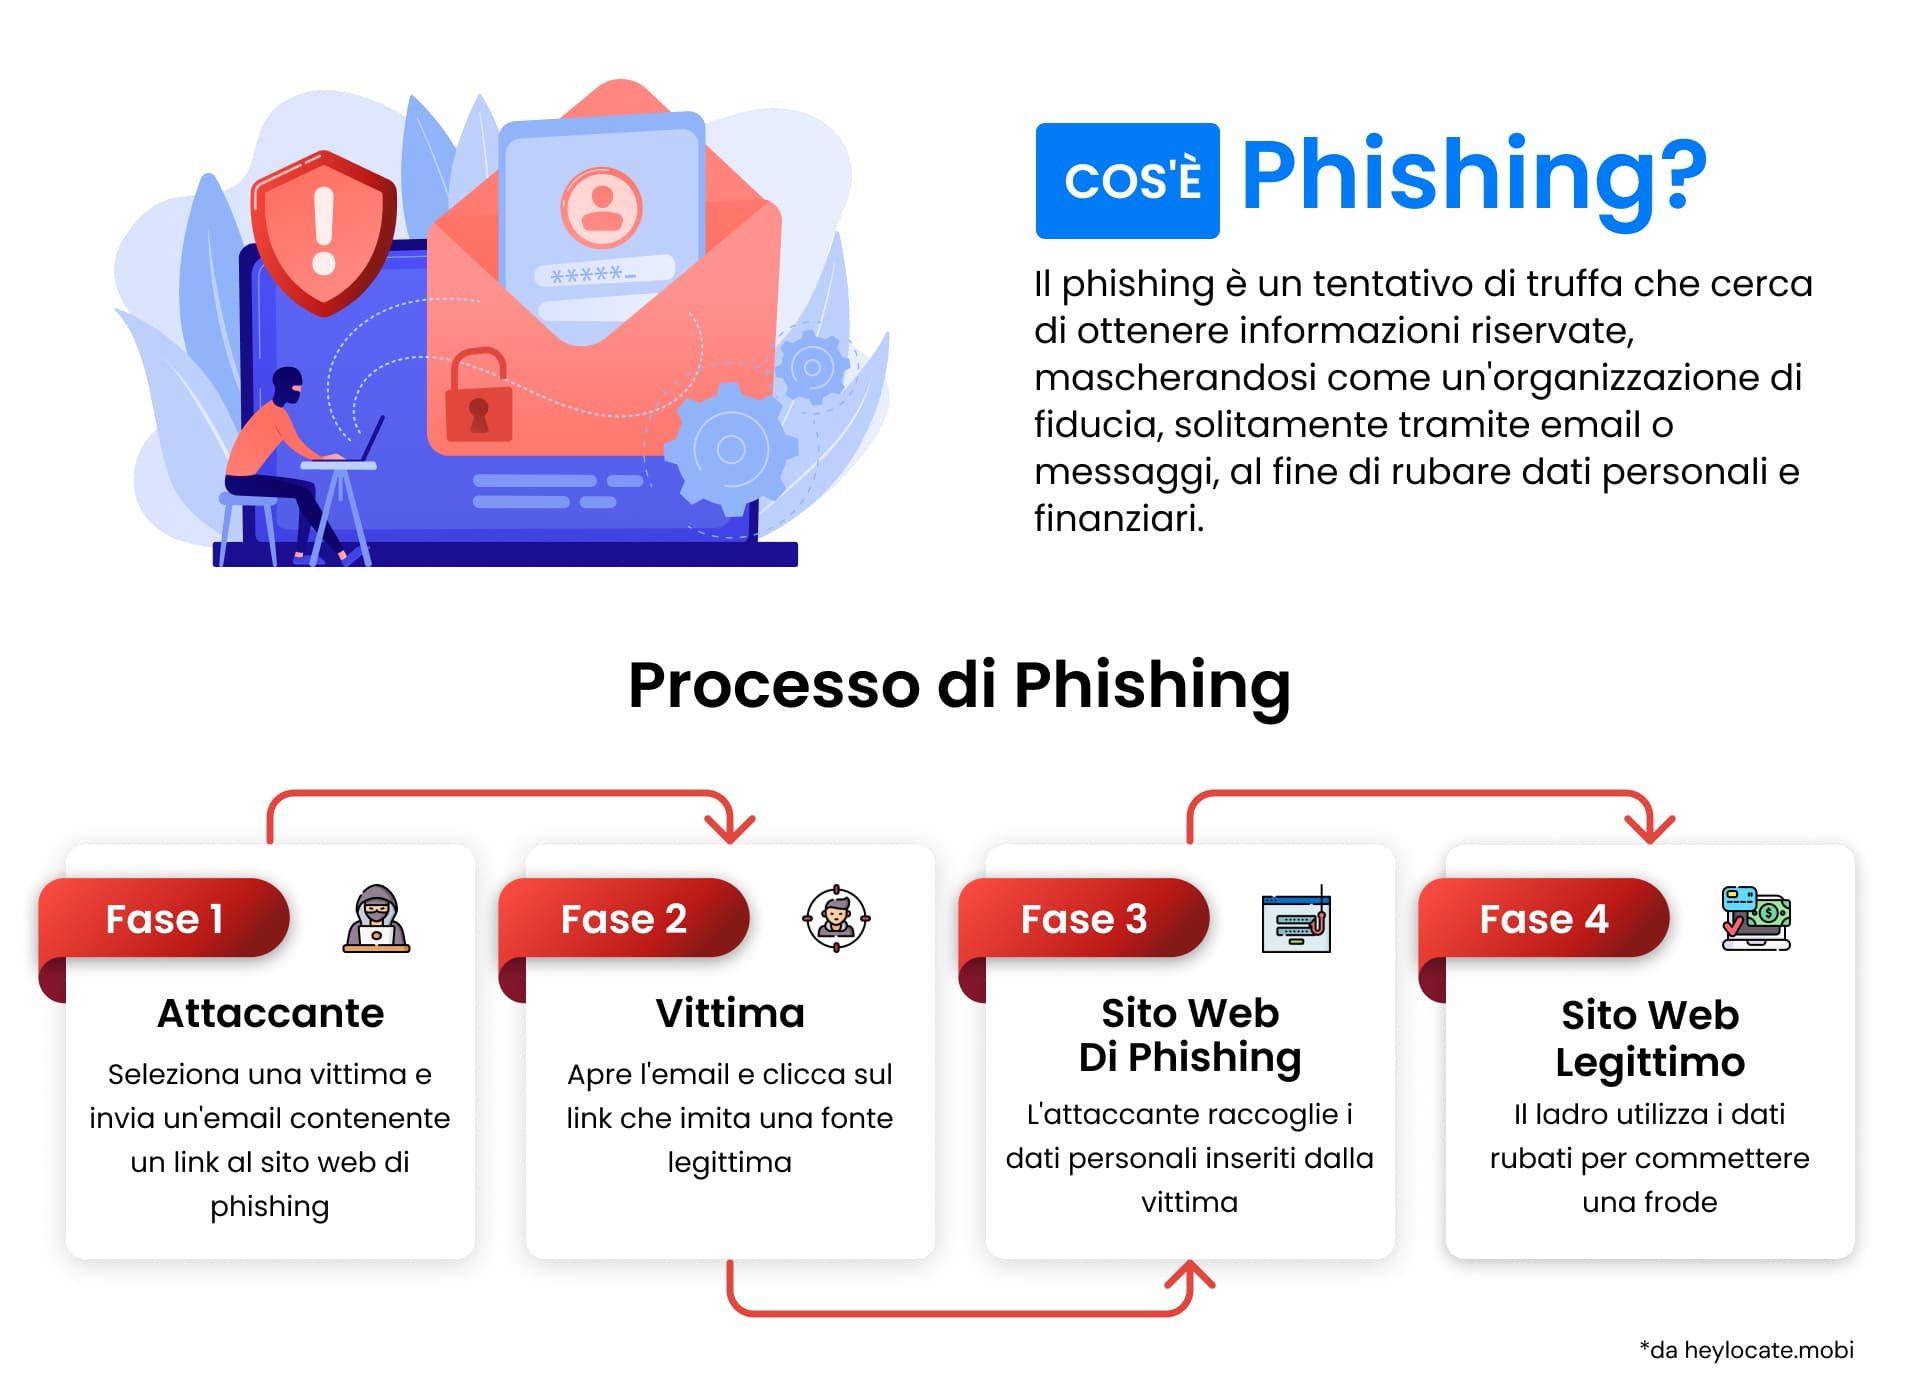 Un'infografica che descrive cos'è il phishing e illustra passo dopo passo come si svolge un attacco di phishing, dalla prospettiva dell'aggressore alle azioni della vittima.